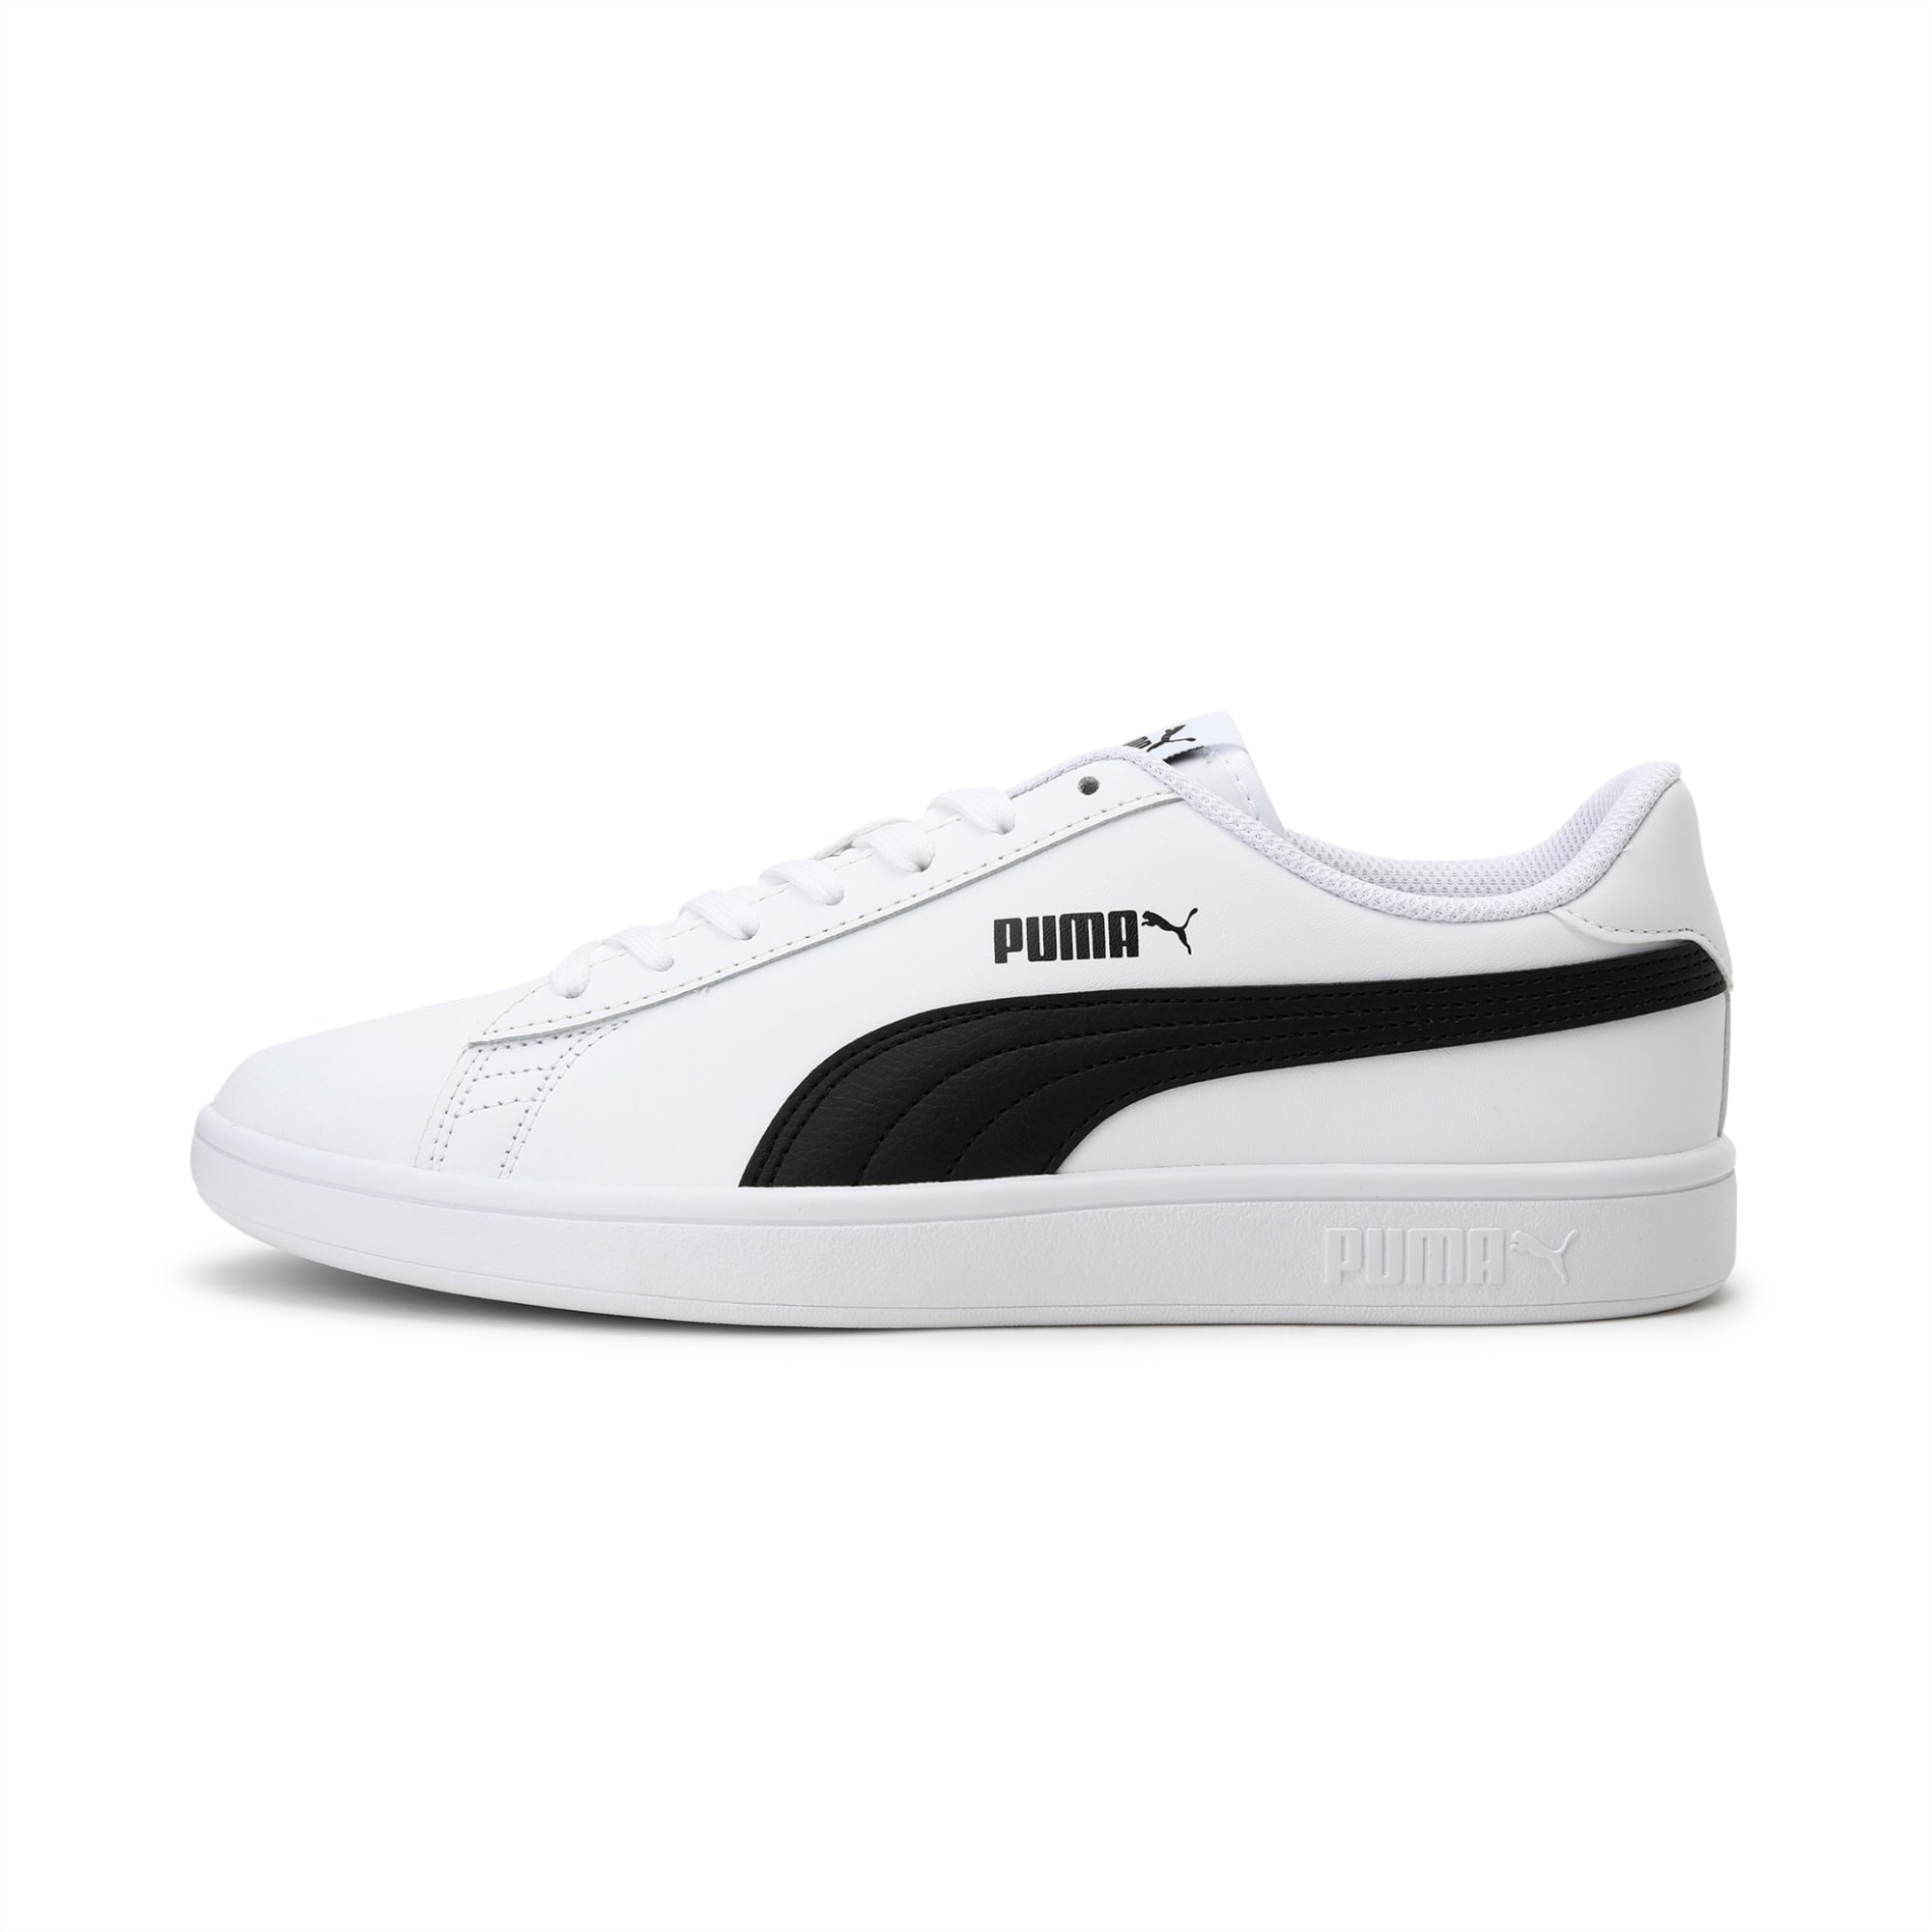 PUMA Smash v2 Sneakers | Puma White-Puma Black | PUMA New Arrivals | PUMA